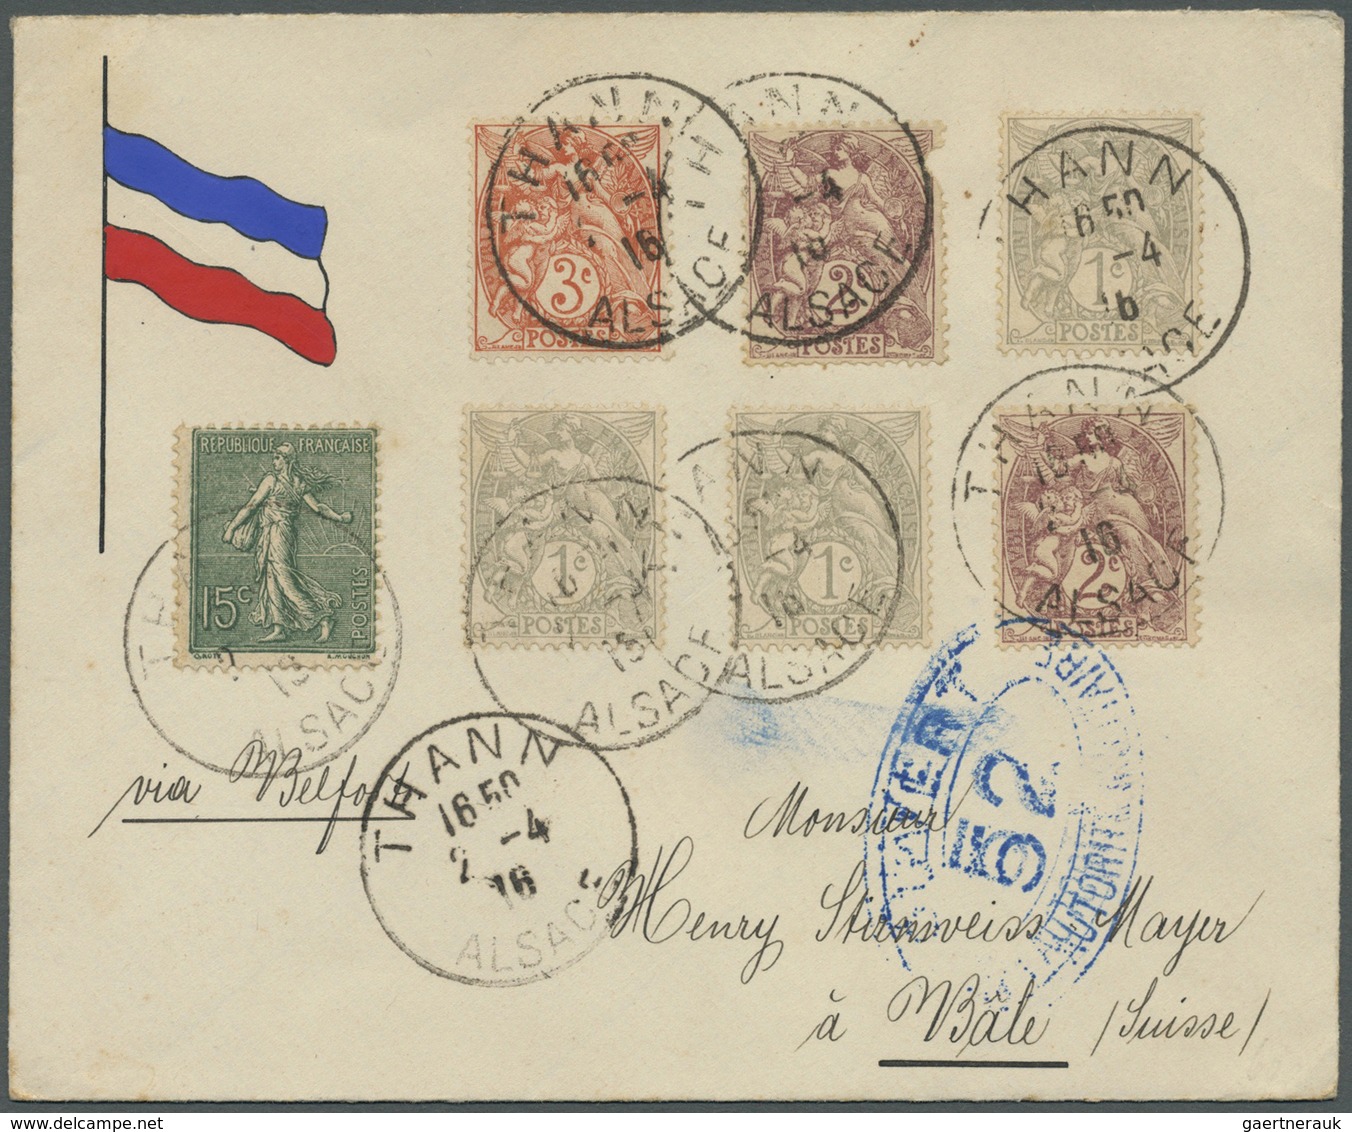 Br Frankreich: 1902/1932, Type Blanc, vielseitige Partie von über 70 Briefen/Karten/Ansichtskarten, dab